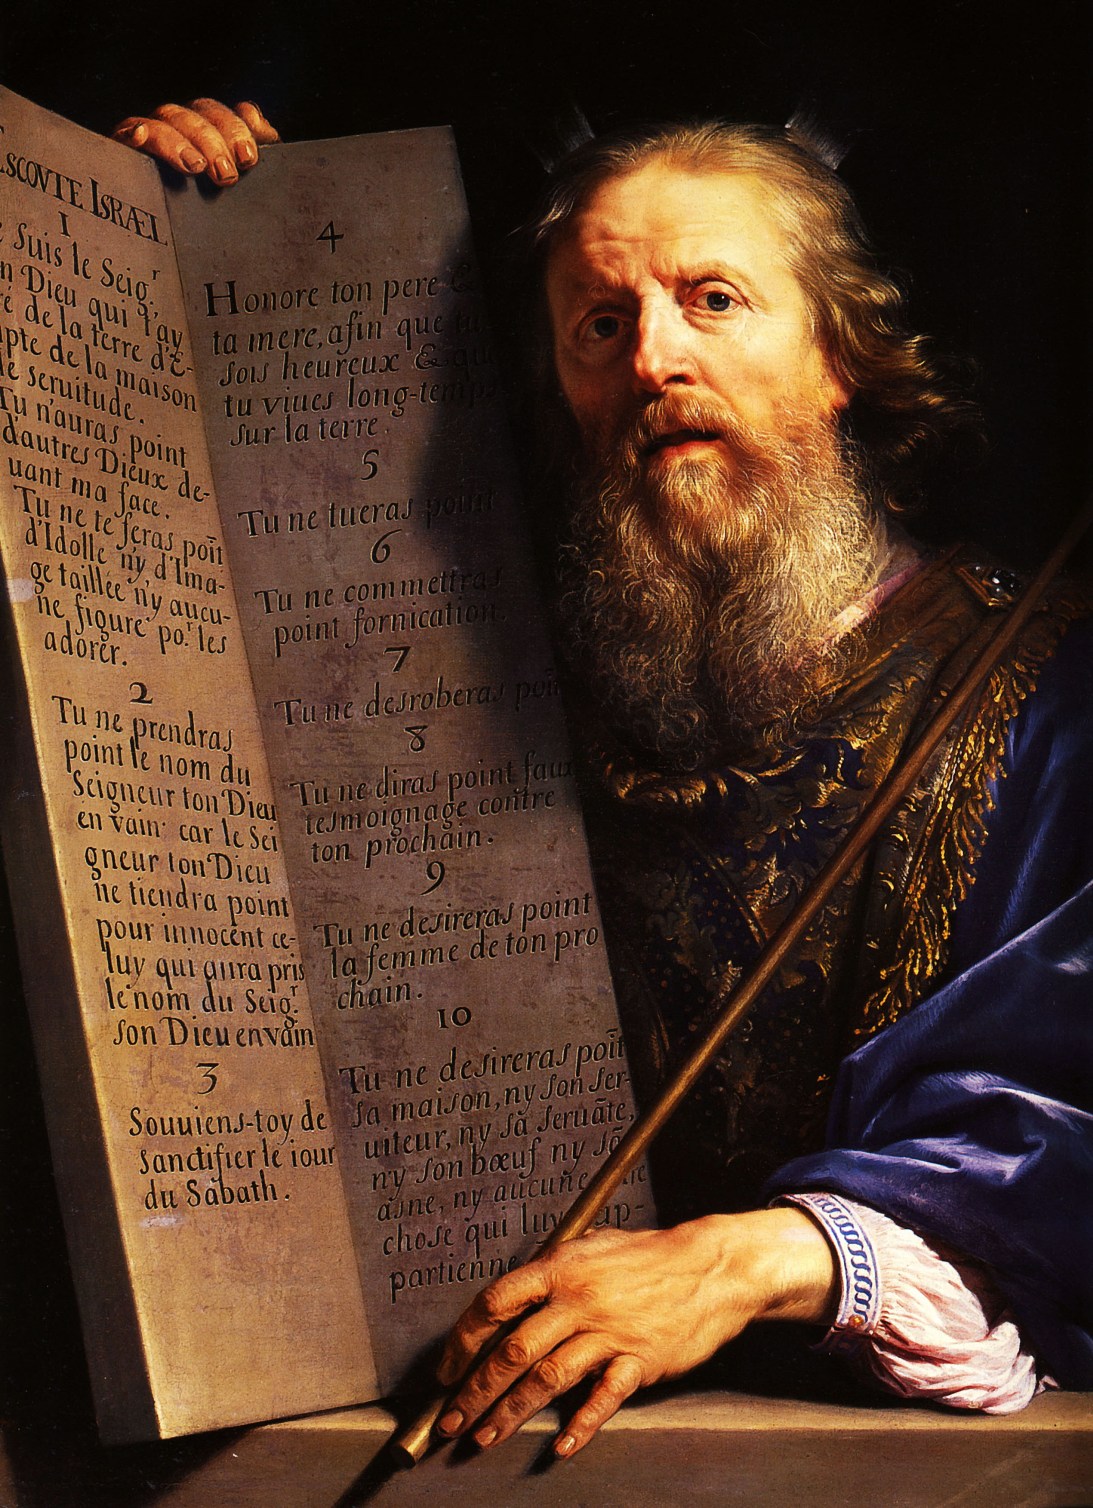 "Пророк Моисей со скрижалями Закона". Художник - Филипп де Шампань, 1648